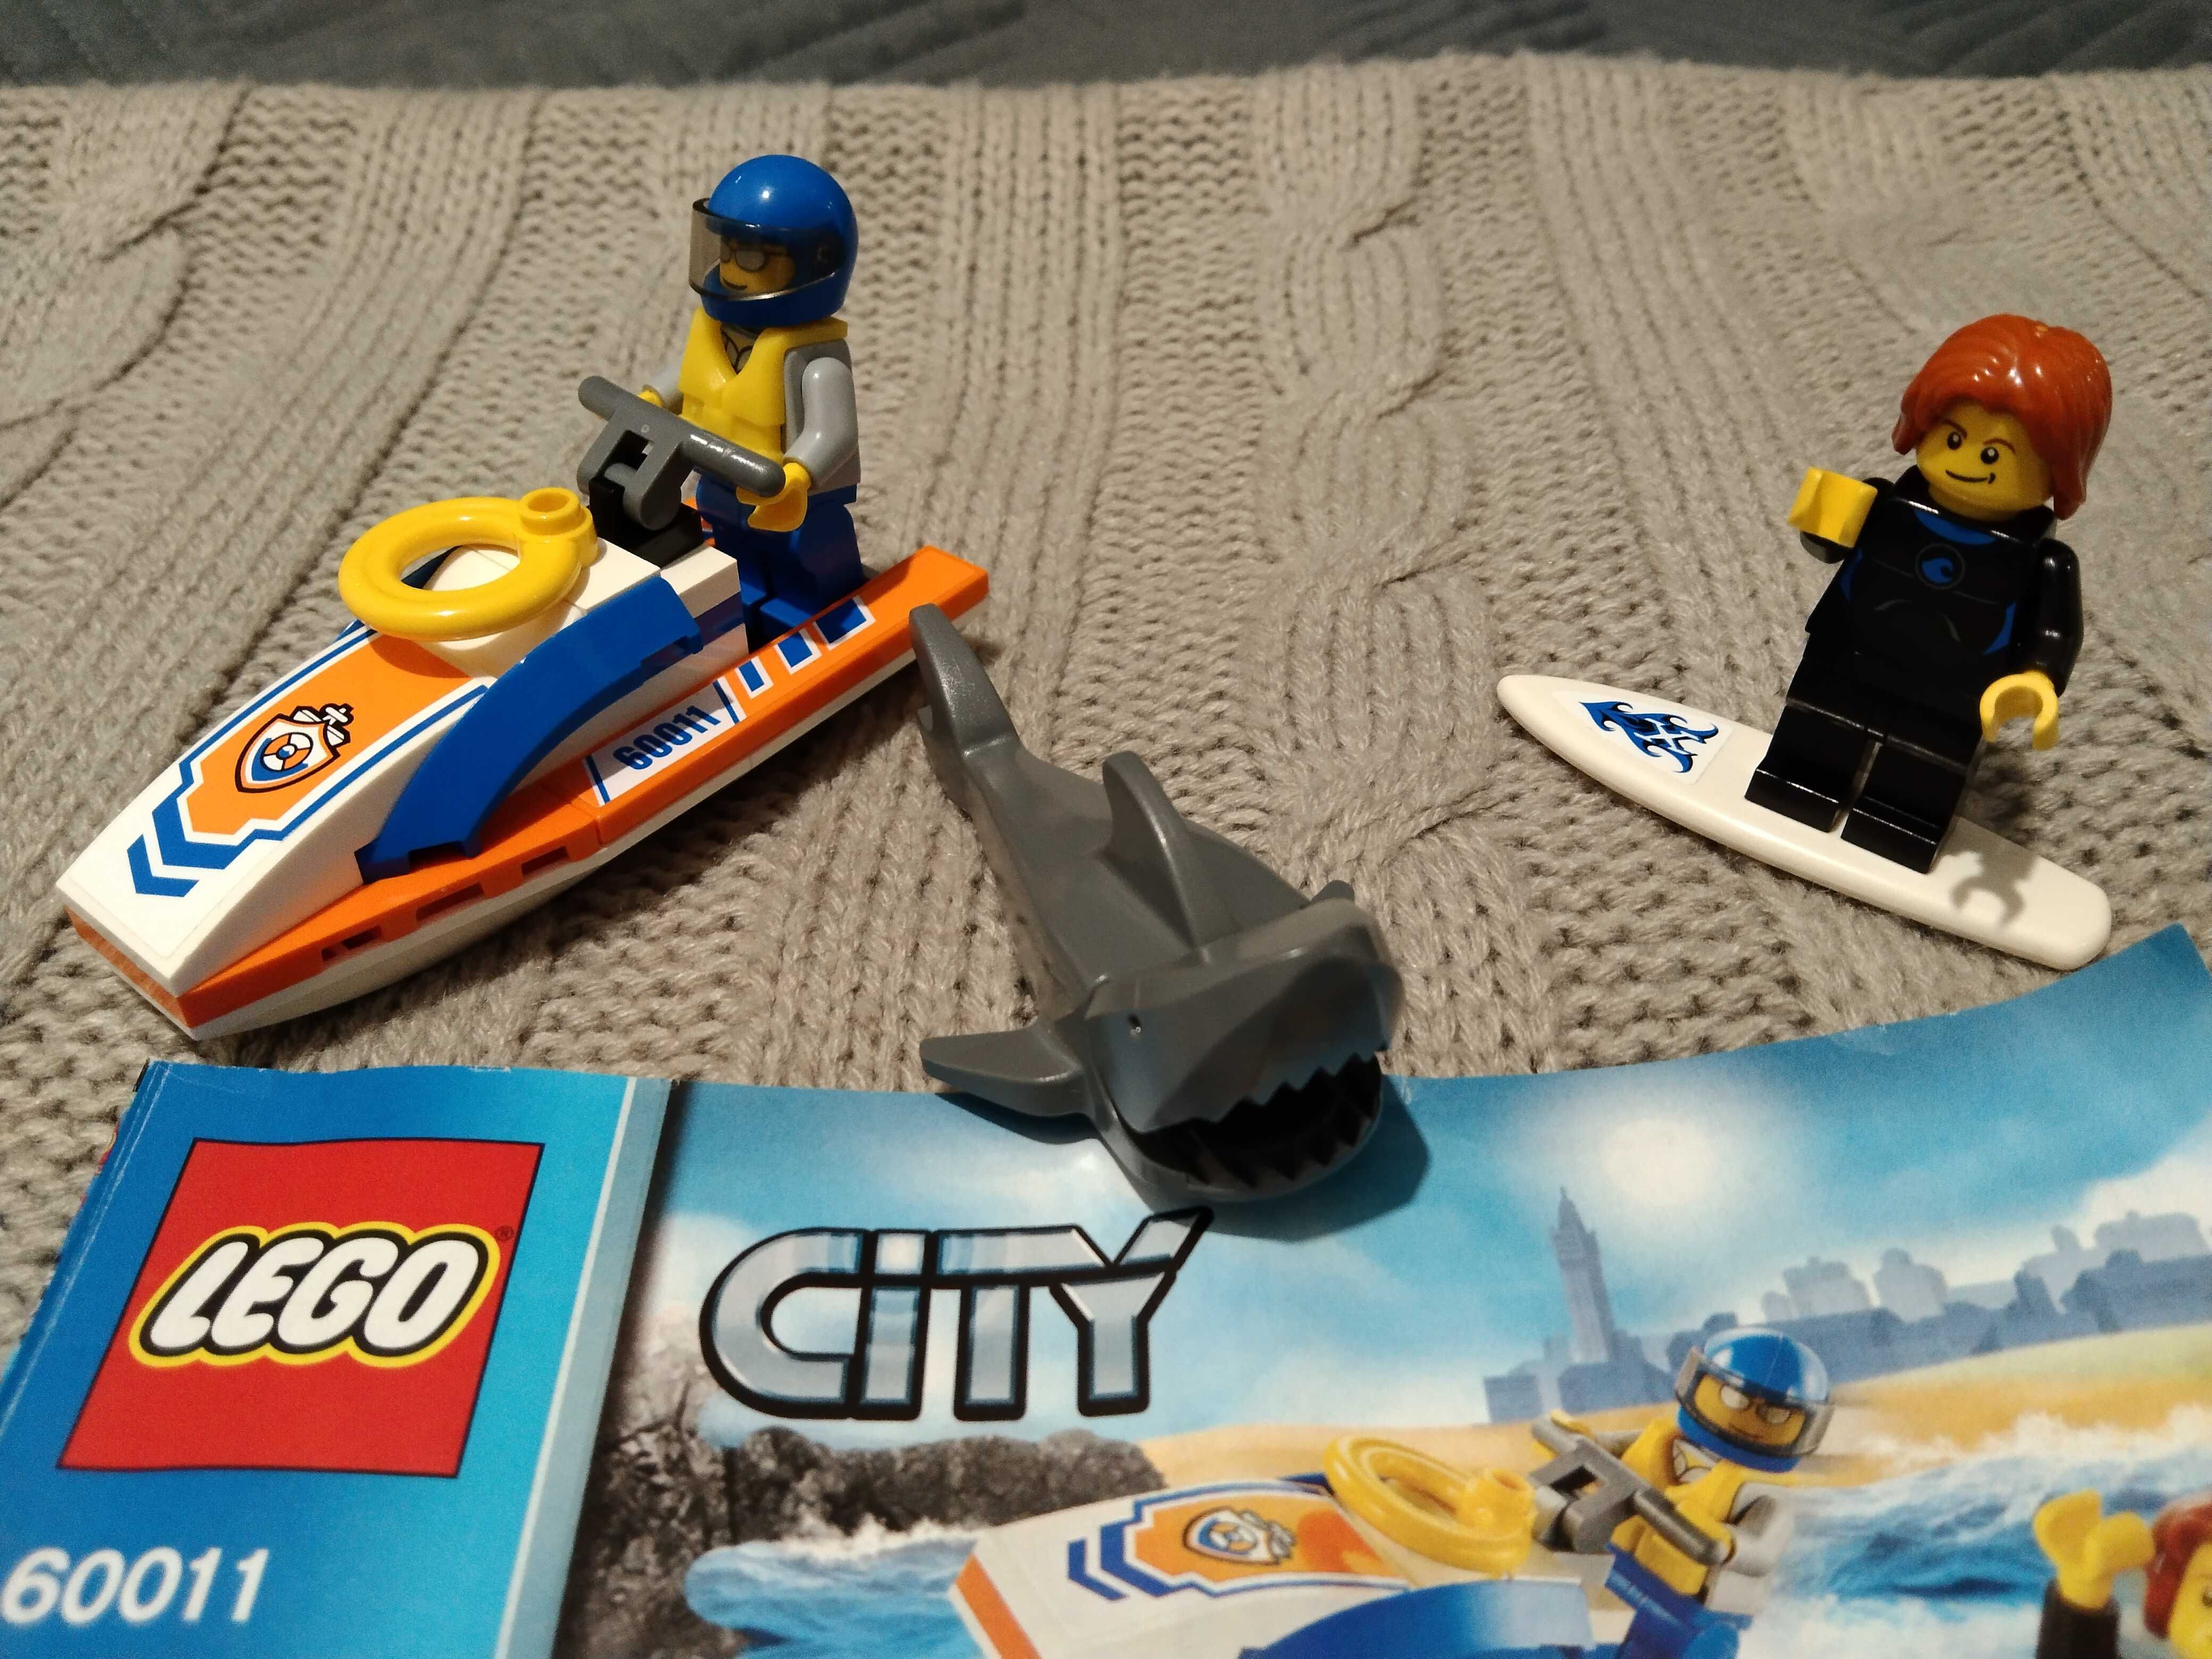 Klocki Lego City 60011